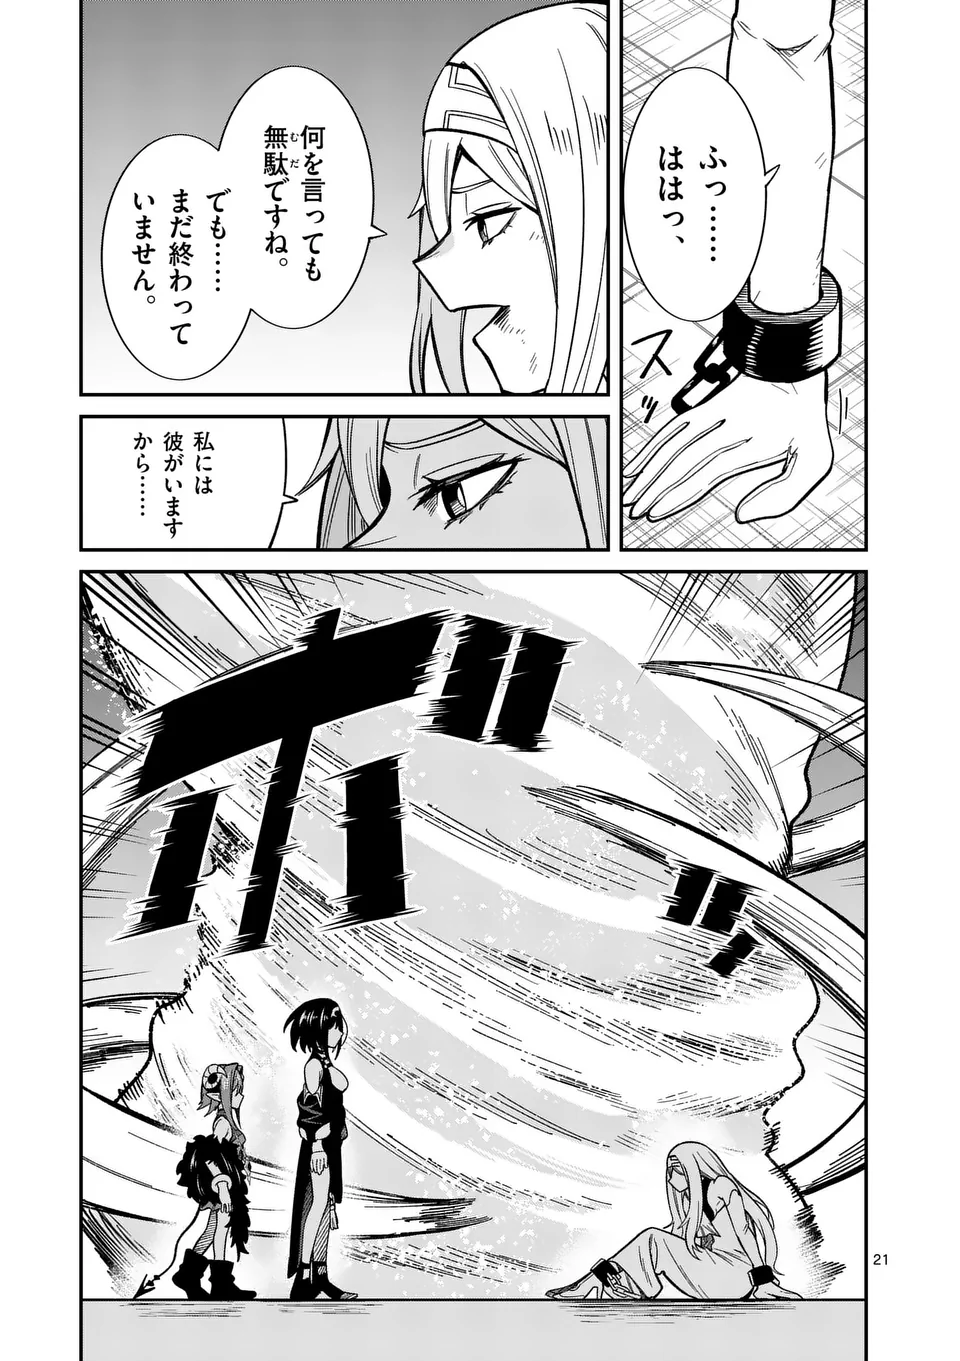 Power-Hara Genkai Yuusha, Maougun kara Koutaiguu de Scout sareru - Chapter 13 - Page 21